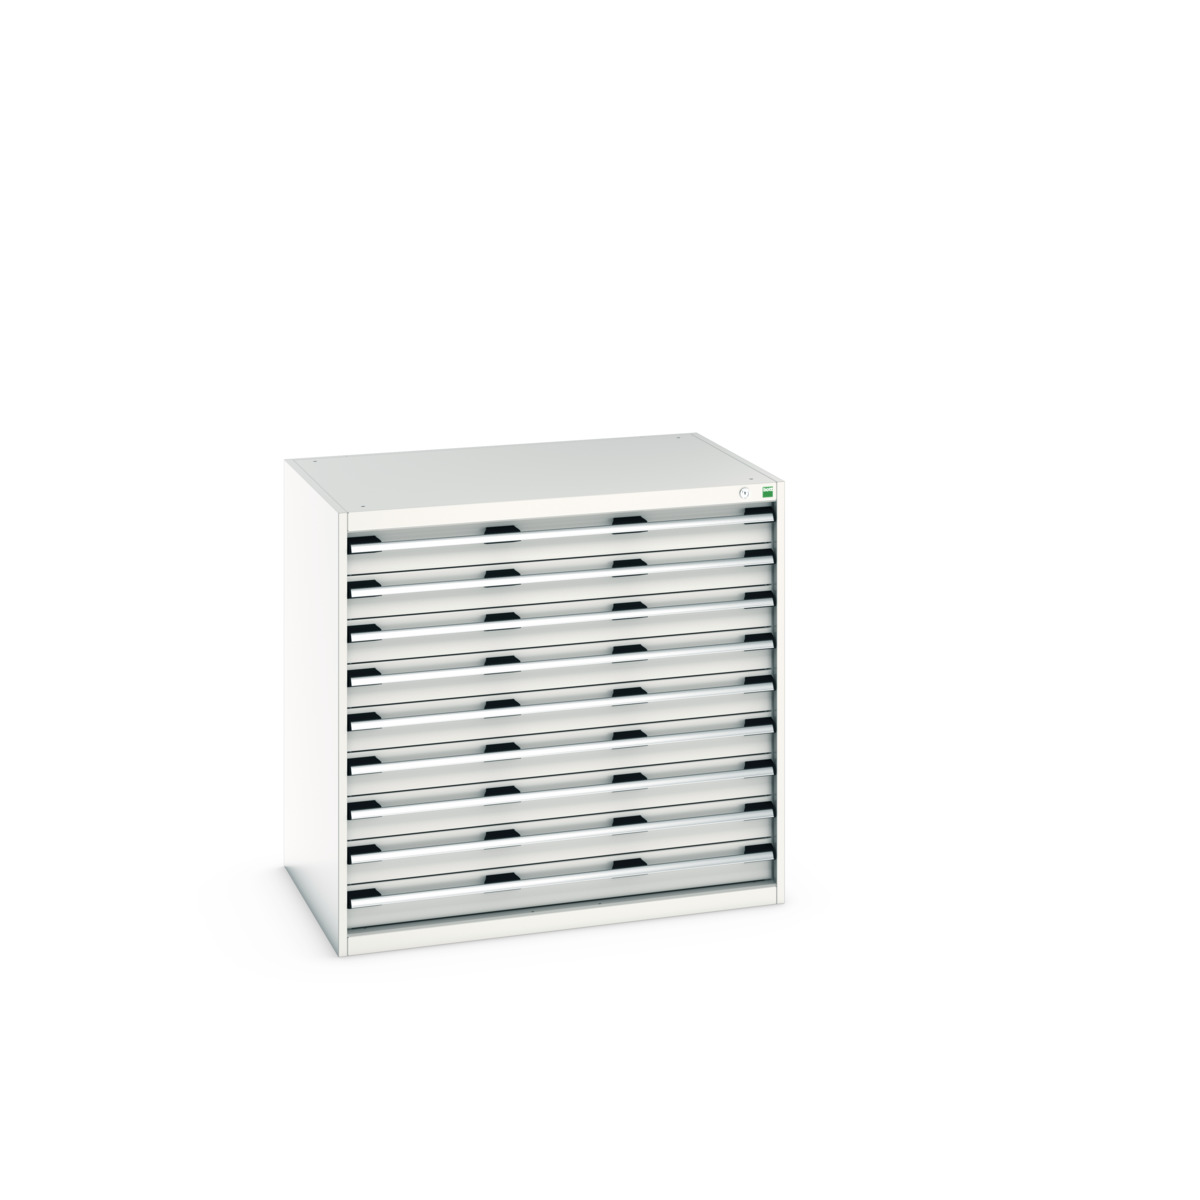 40029027.16V - cubio drawer cabinet